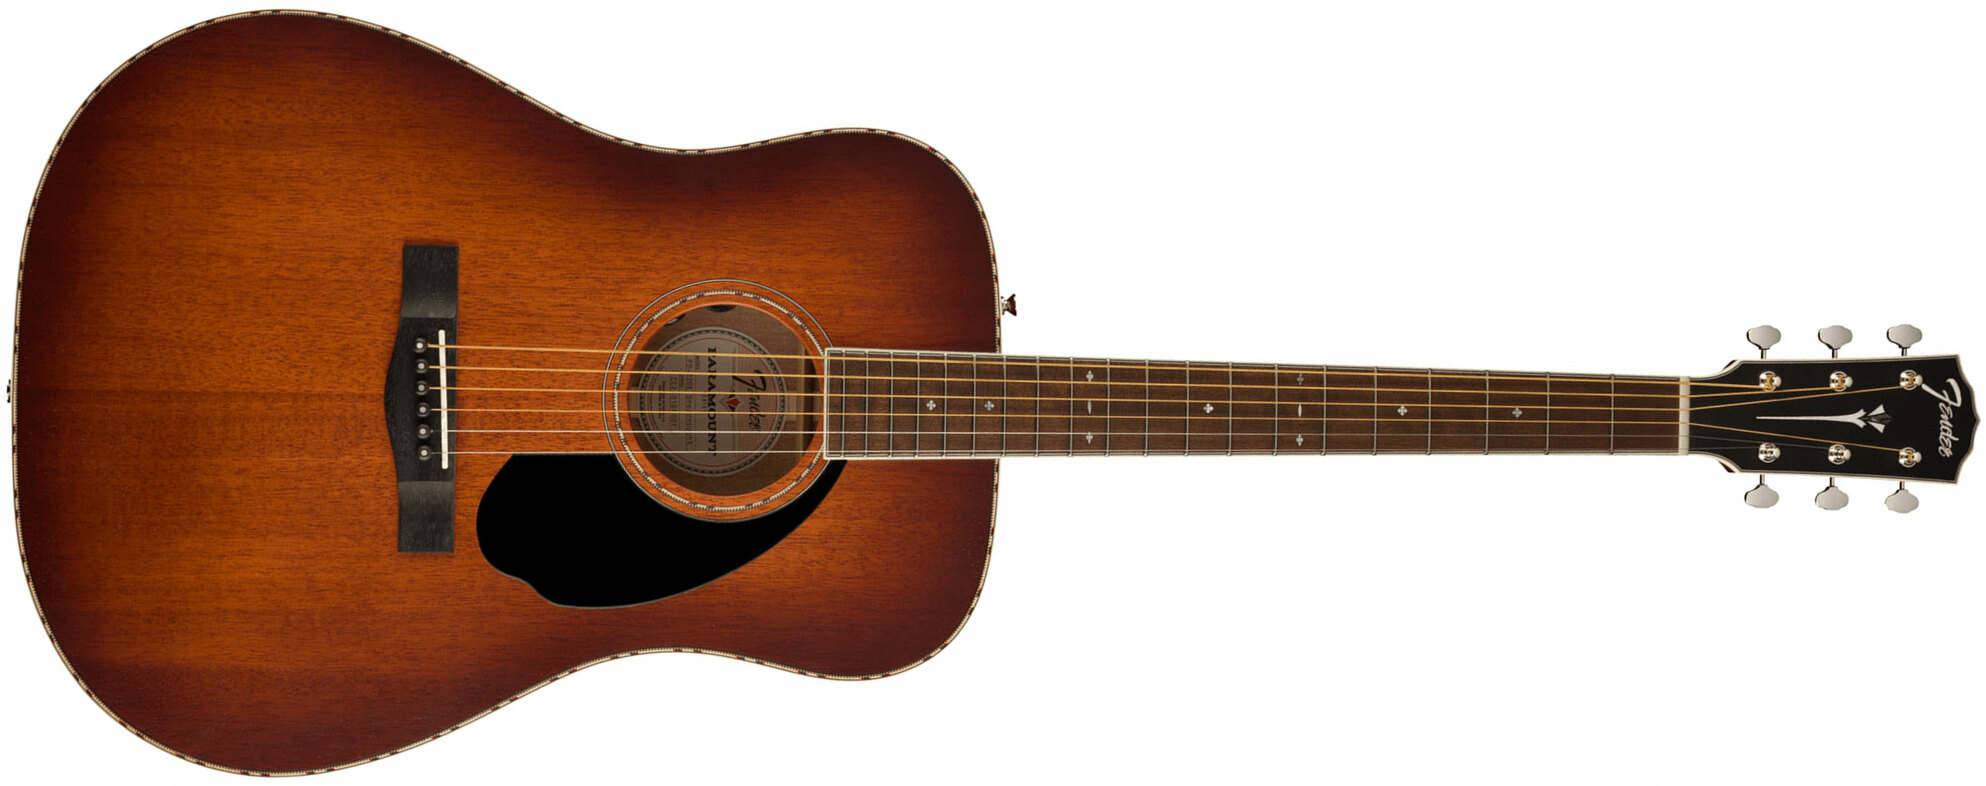 Fender Pd-220e Paramount Dreadnought Tout Acajou Ova - Aged Cognac Burst - Electro acoustic guitar - Main picture